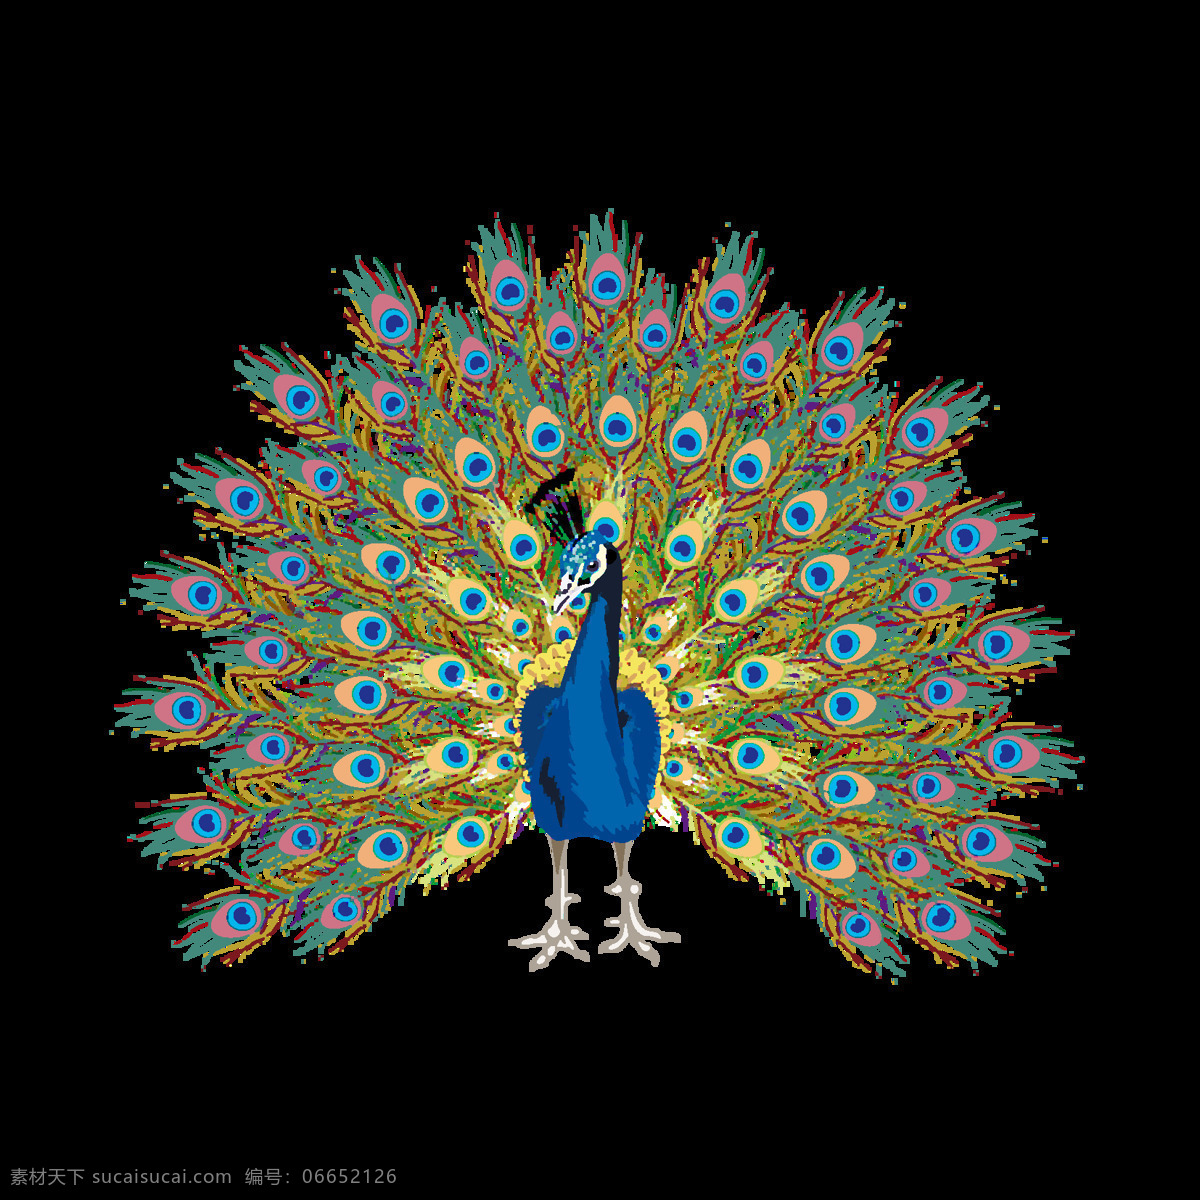 卡通 时尚 创意 唯美 孔雀 手绘 可爱 孔雀开屏 树枝上的孔雀 美丽的孔雀 绿色 动物 插画 羽毛 小鸟